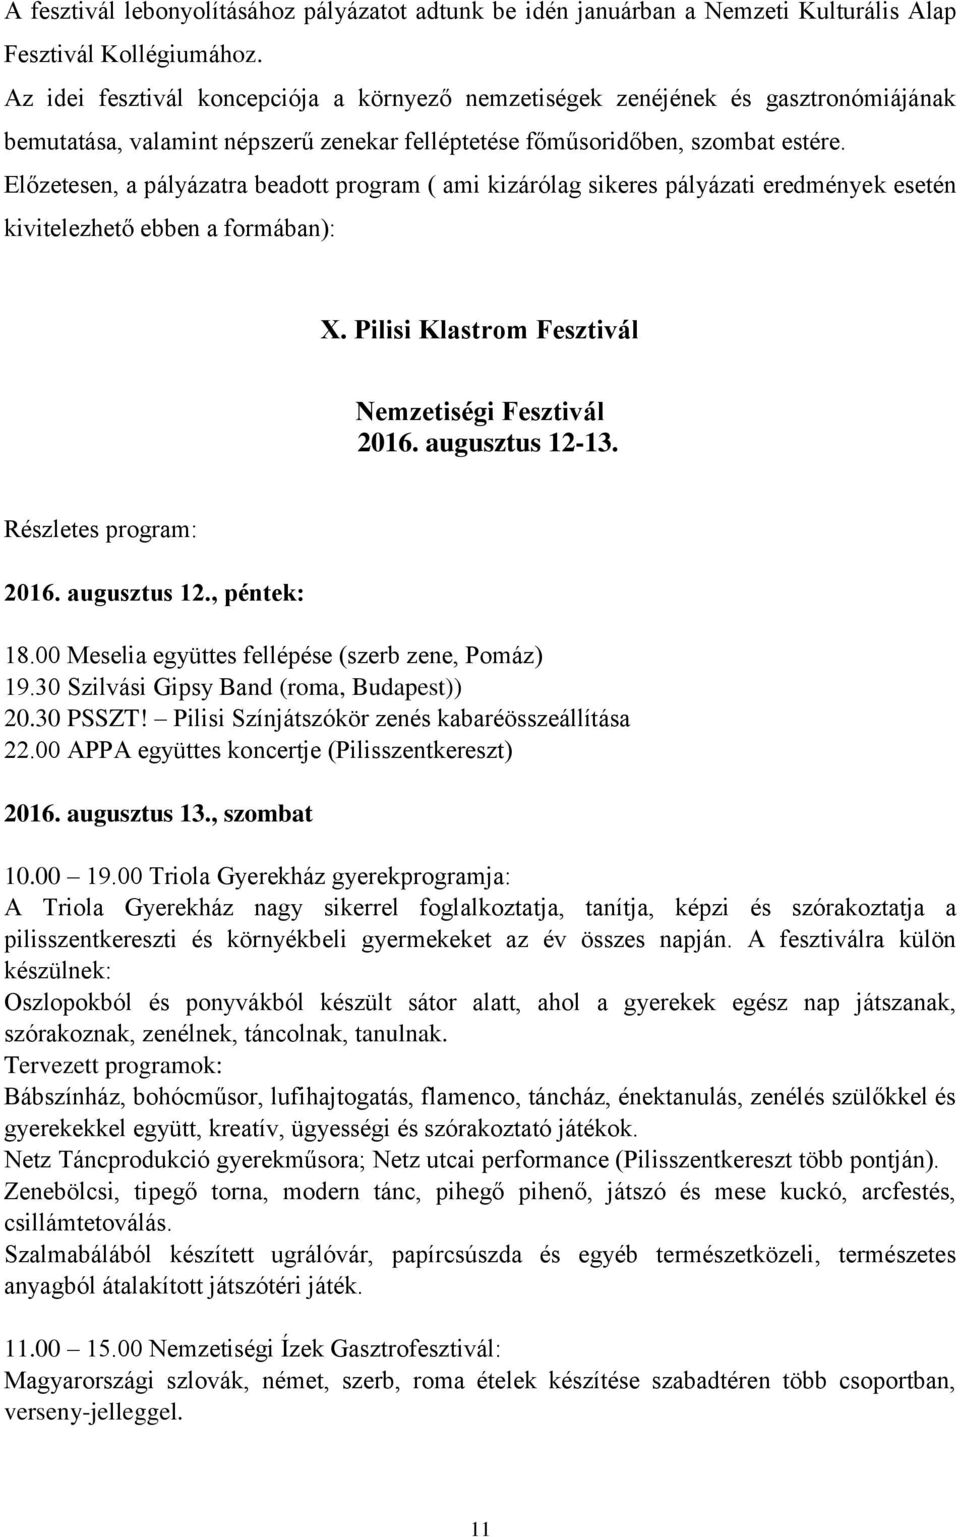 Előzetesen, a pályázatra beadott program ( ami kizárólag sikeres pályázati eredmények esetén kivitelezhető ebben a formában): X. Pilisi Klastrom Fesztivál Nemzetiségi Fesztivál 2016. augusztus 12-13.